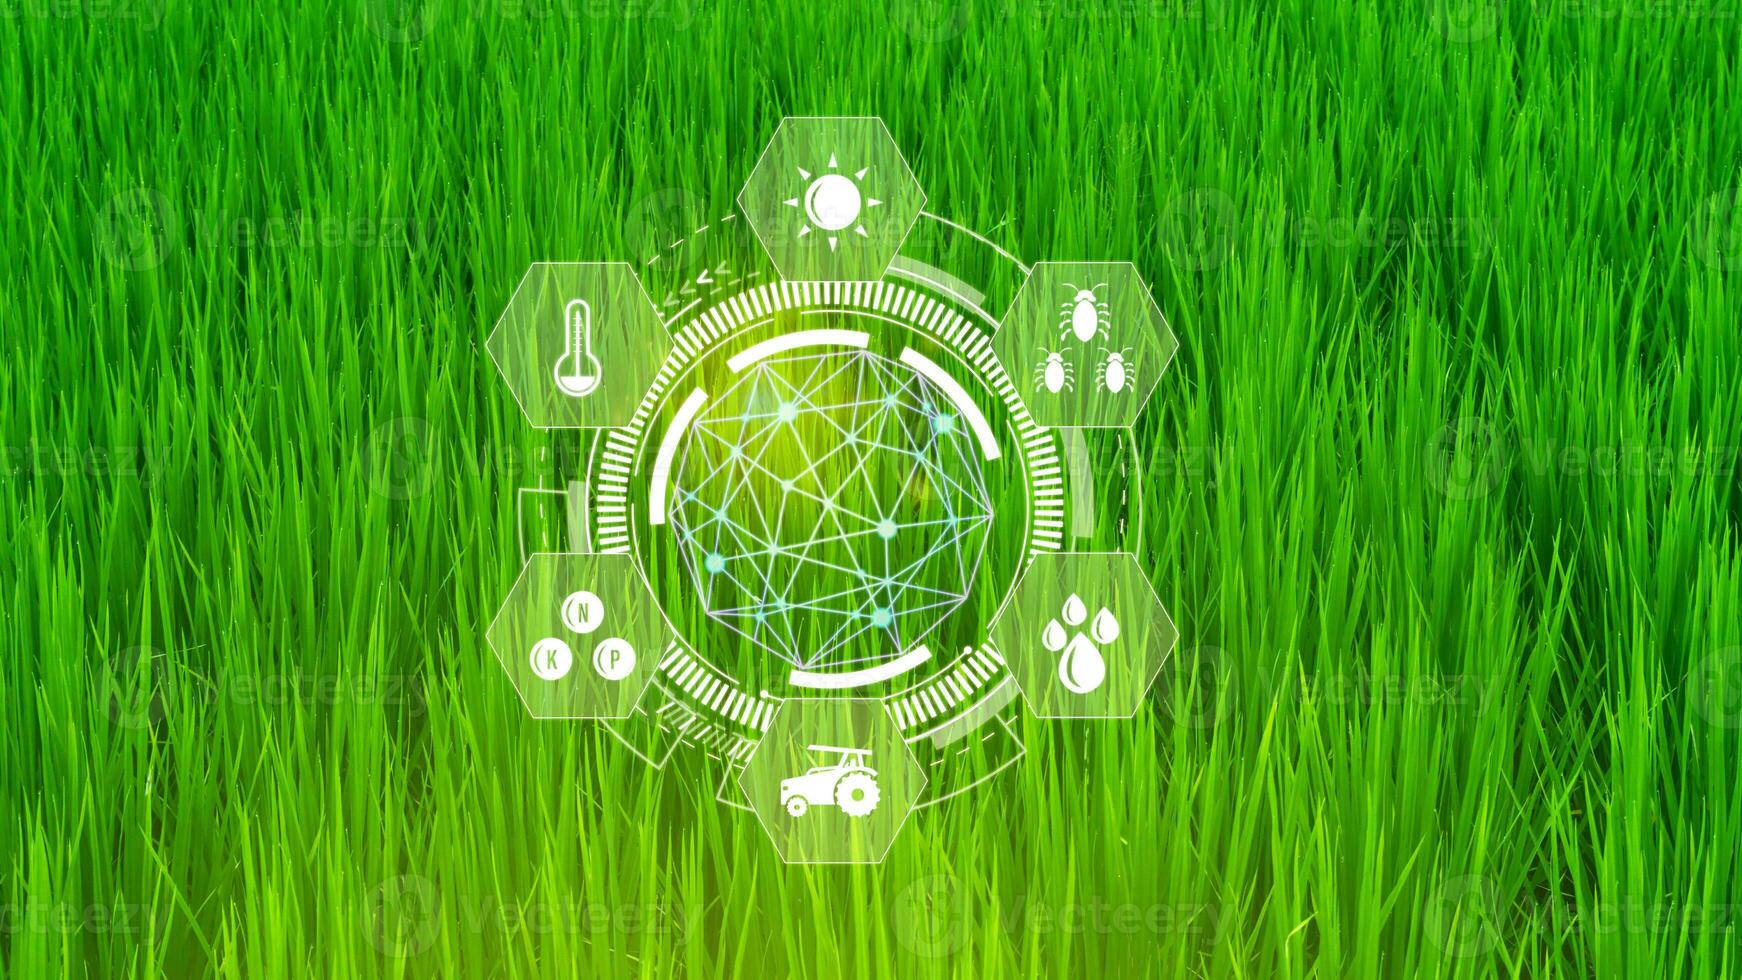 verde arroz mudas campo com infográficos inteligente agricultura e precisão agricultura com visual ícone, digital tecnologia agricultura e inteligente agricultura conceito. foto